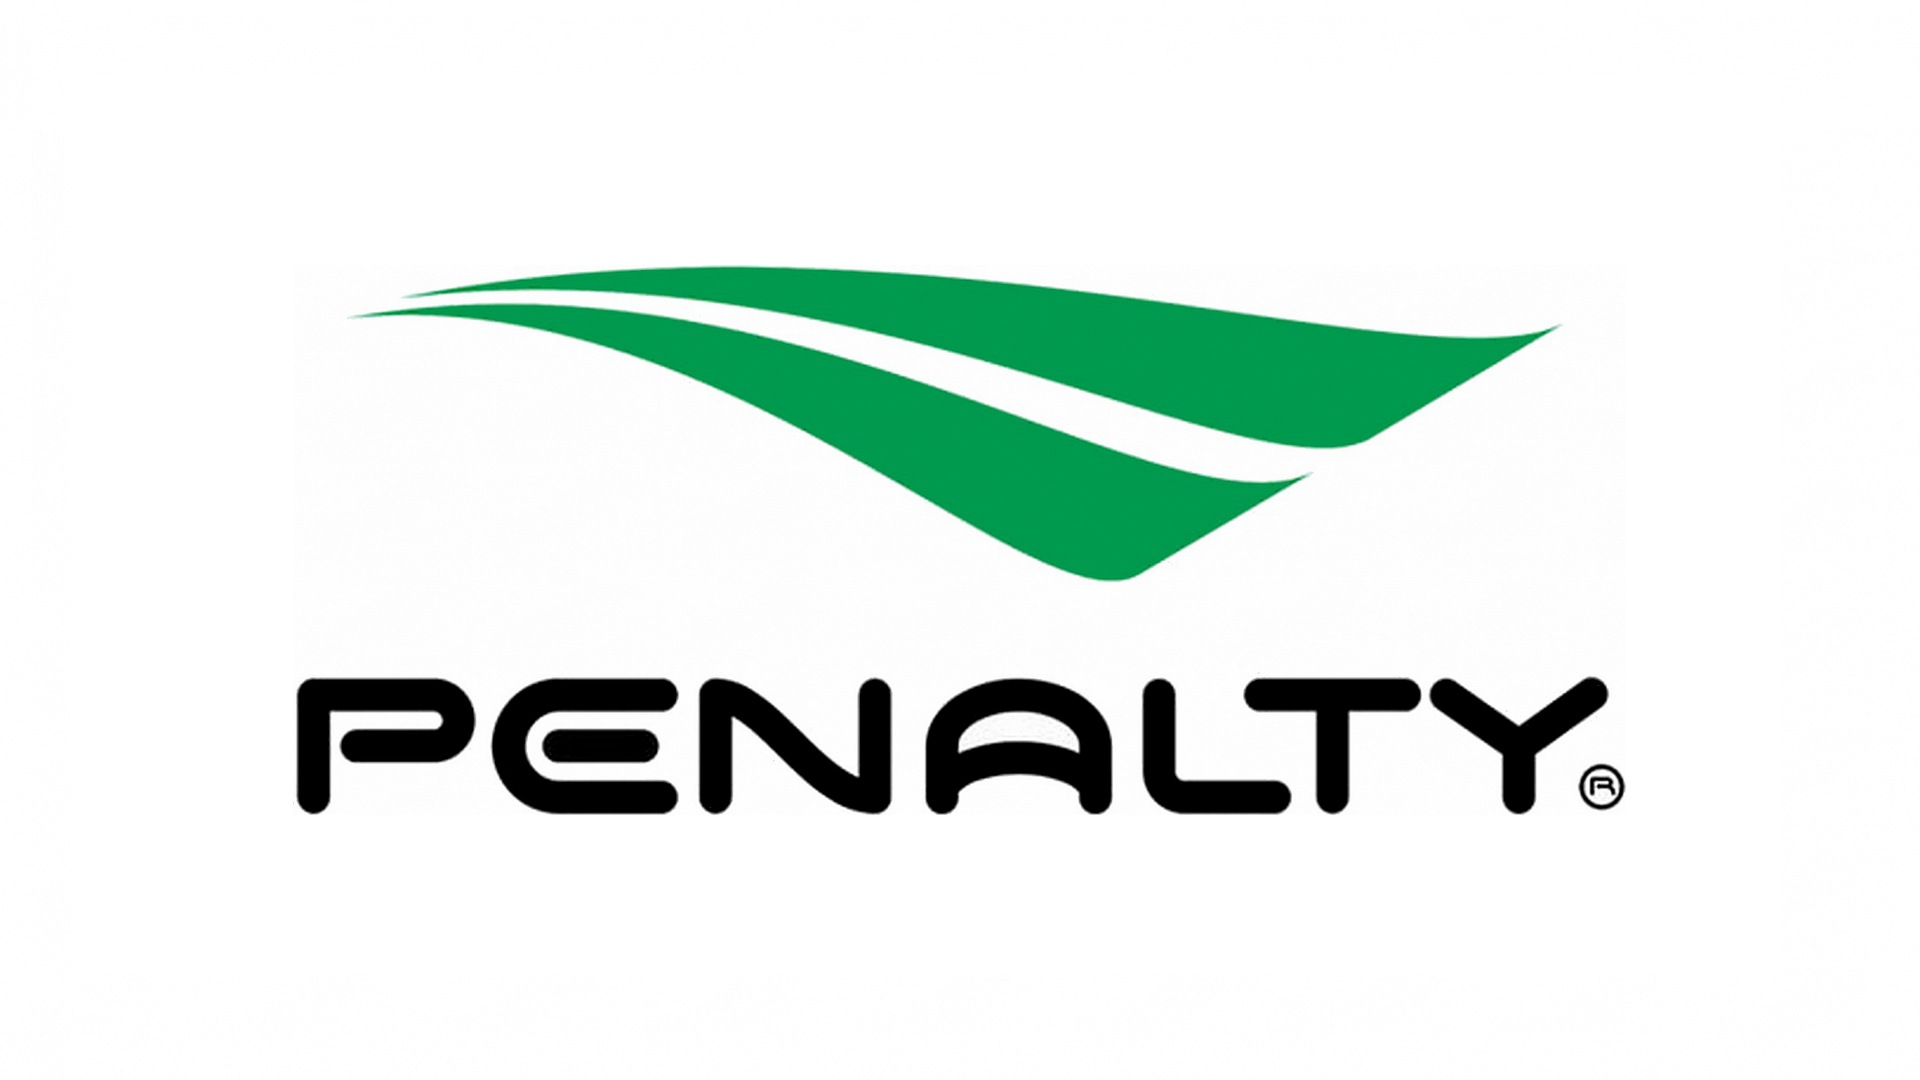 Penalty - Penalty